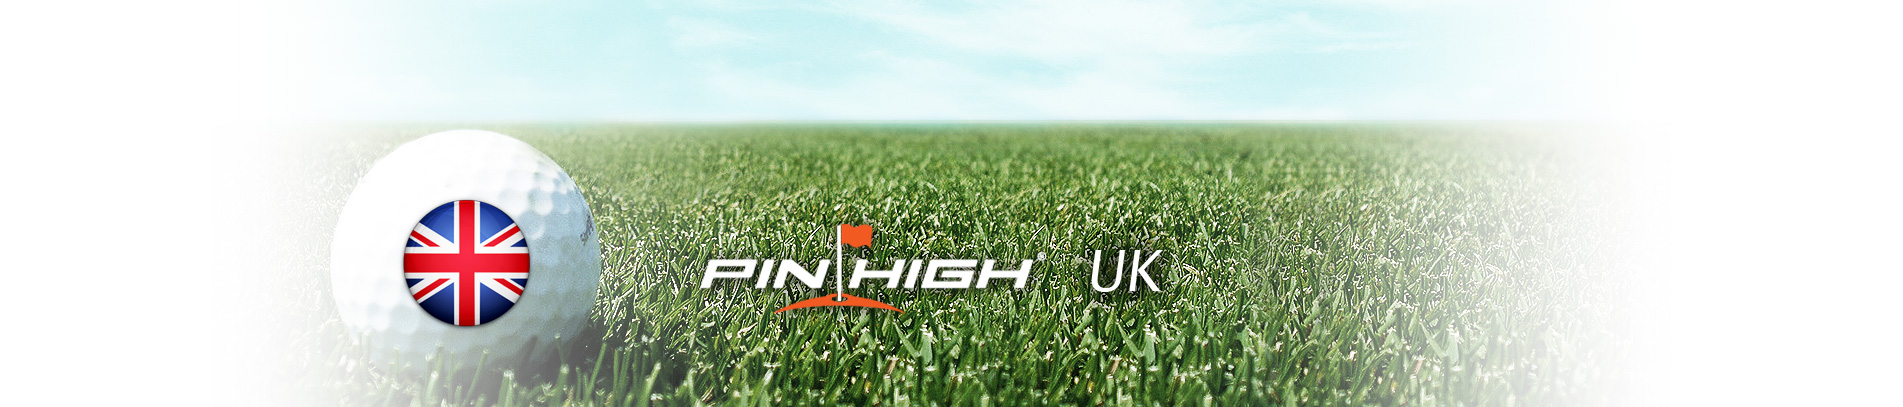 PIN HIGH UK